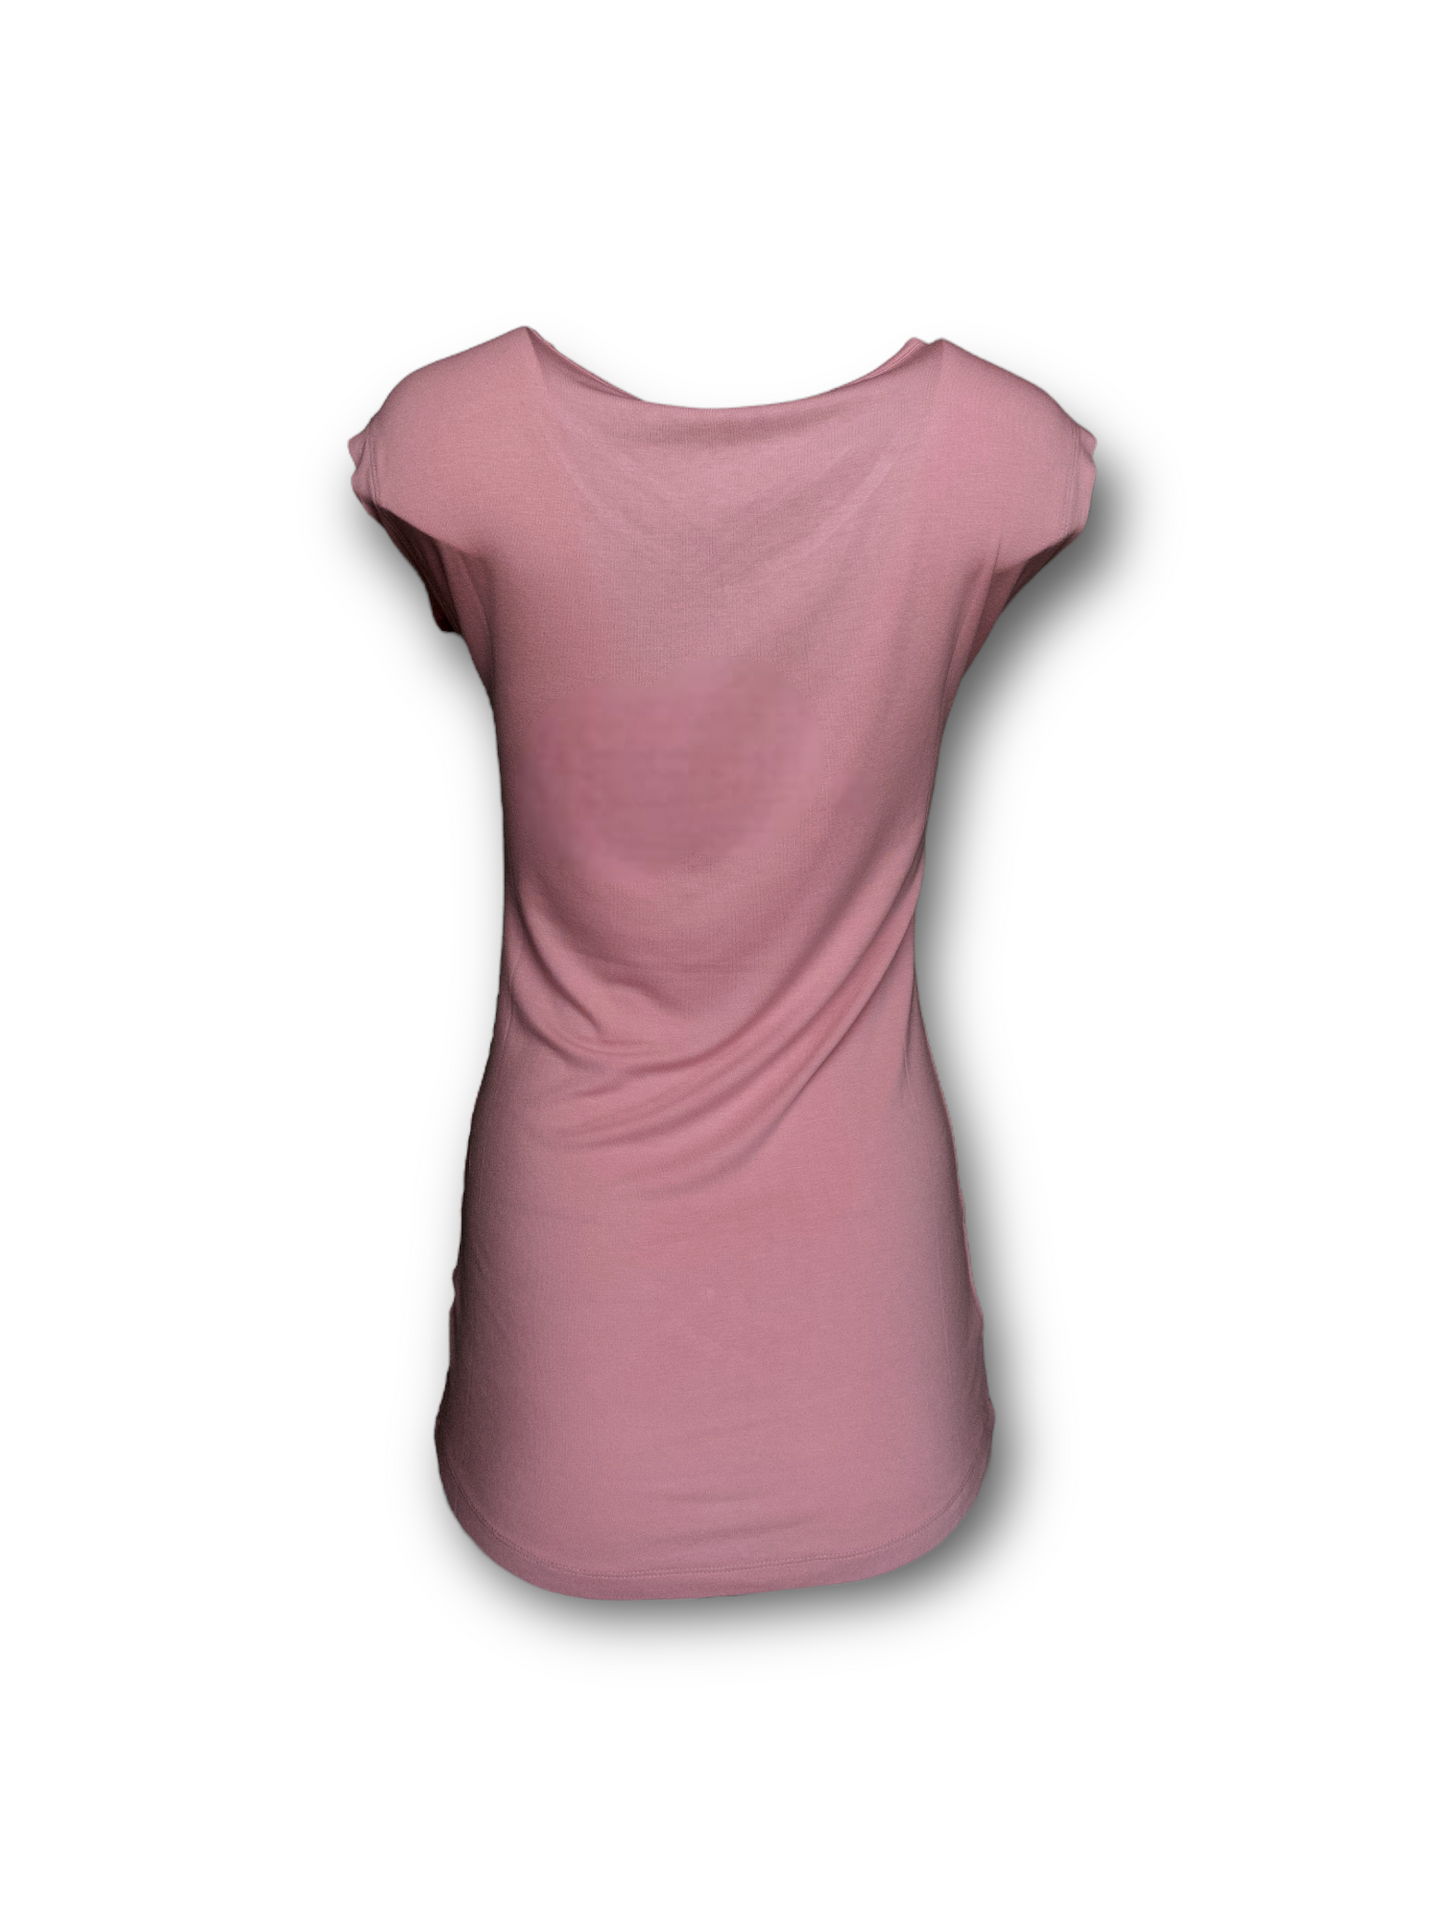 T-shirt rose Oxygen pour femme